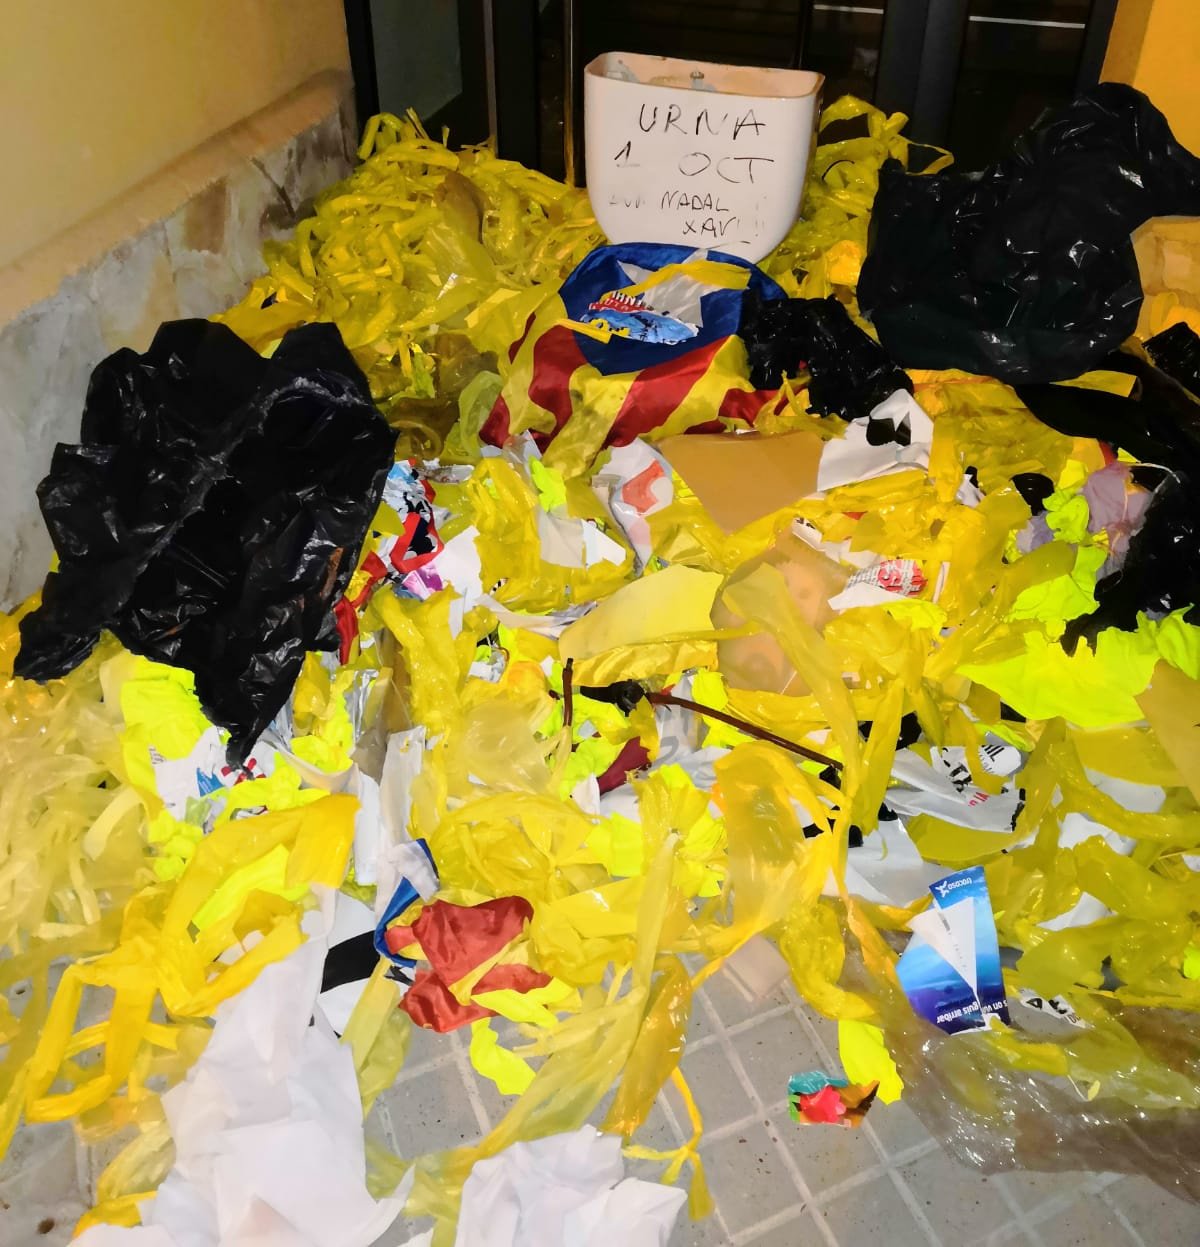 Omplen de deixalles i llaços grocs estripats la casa de l'alcalde de Vilassar de Dalt